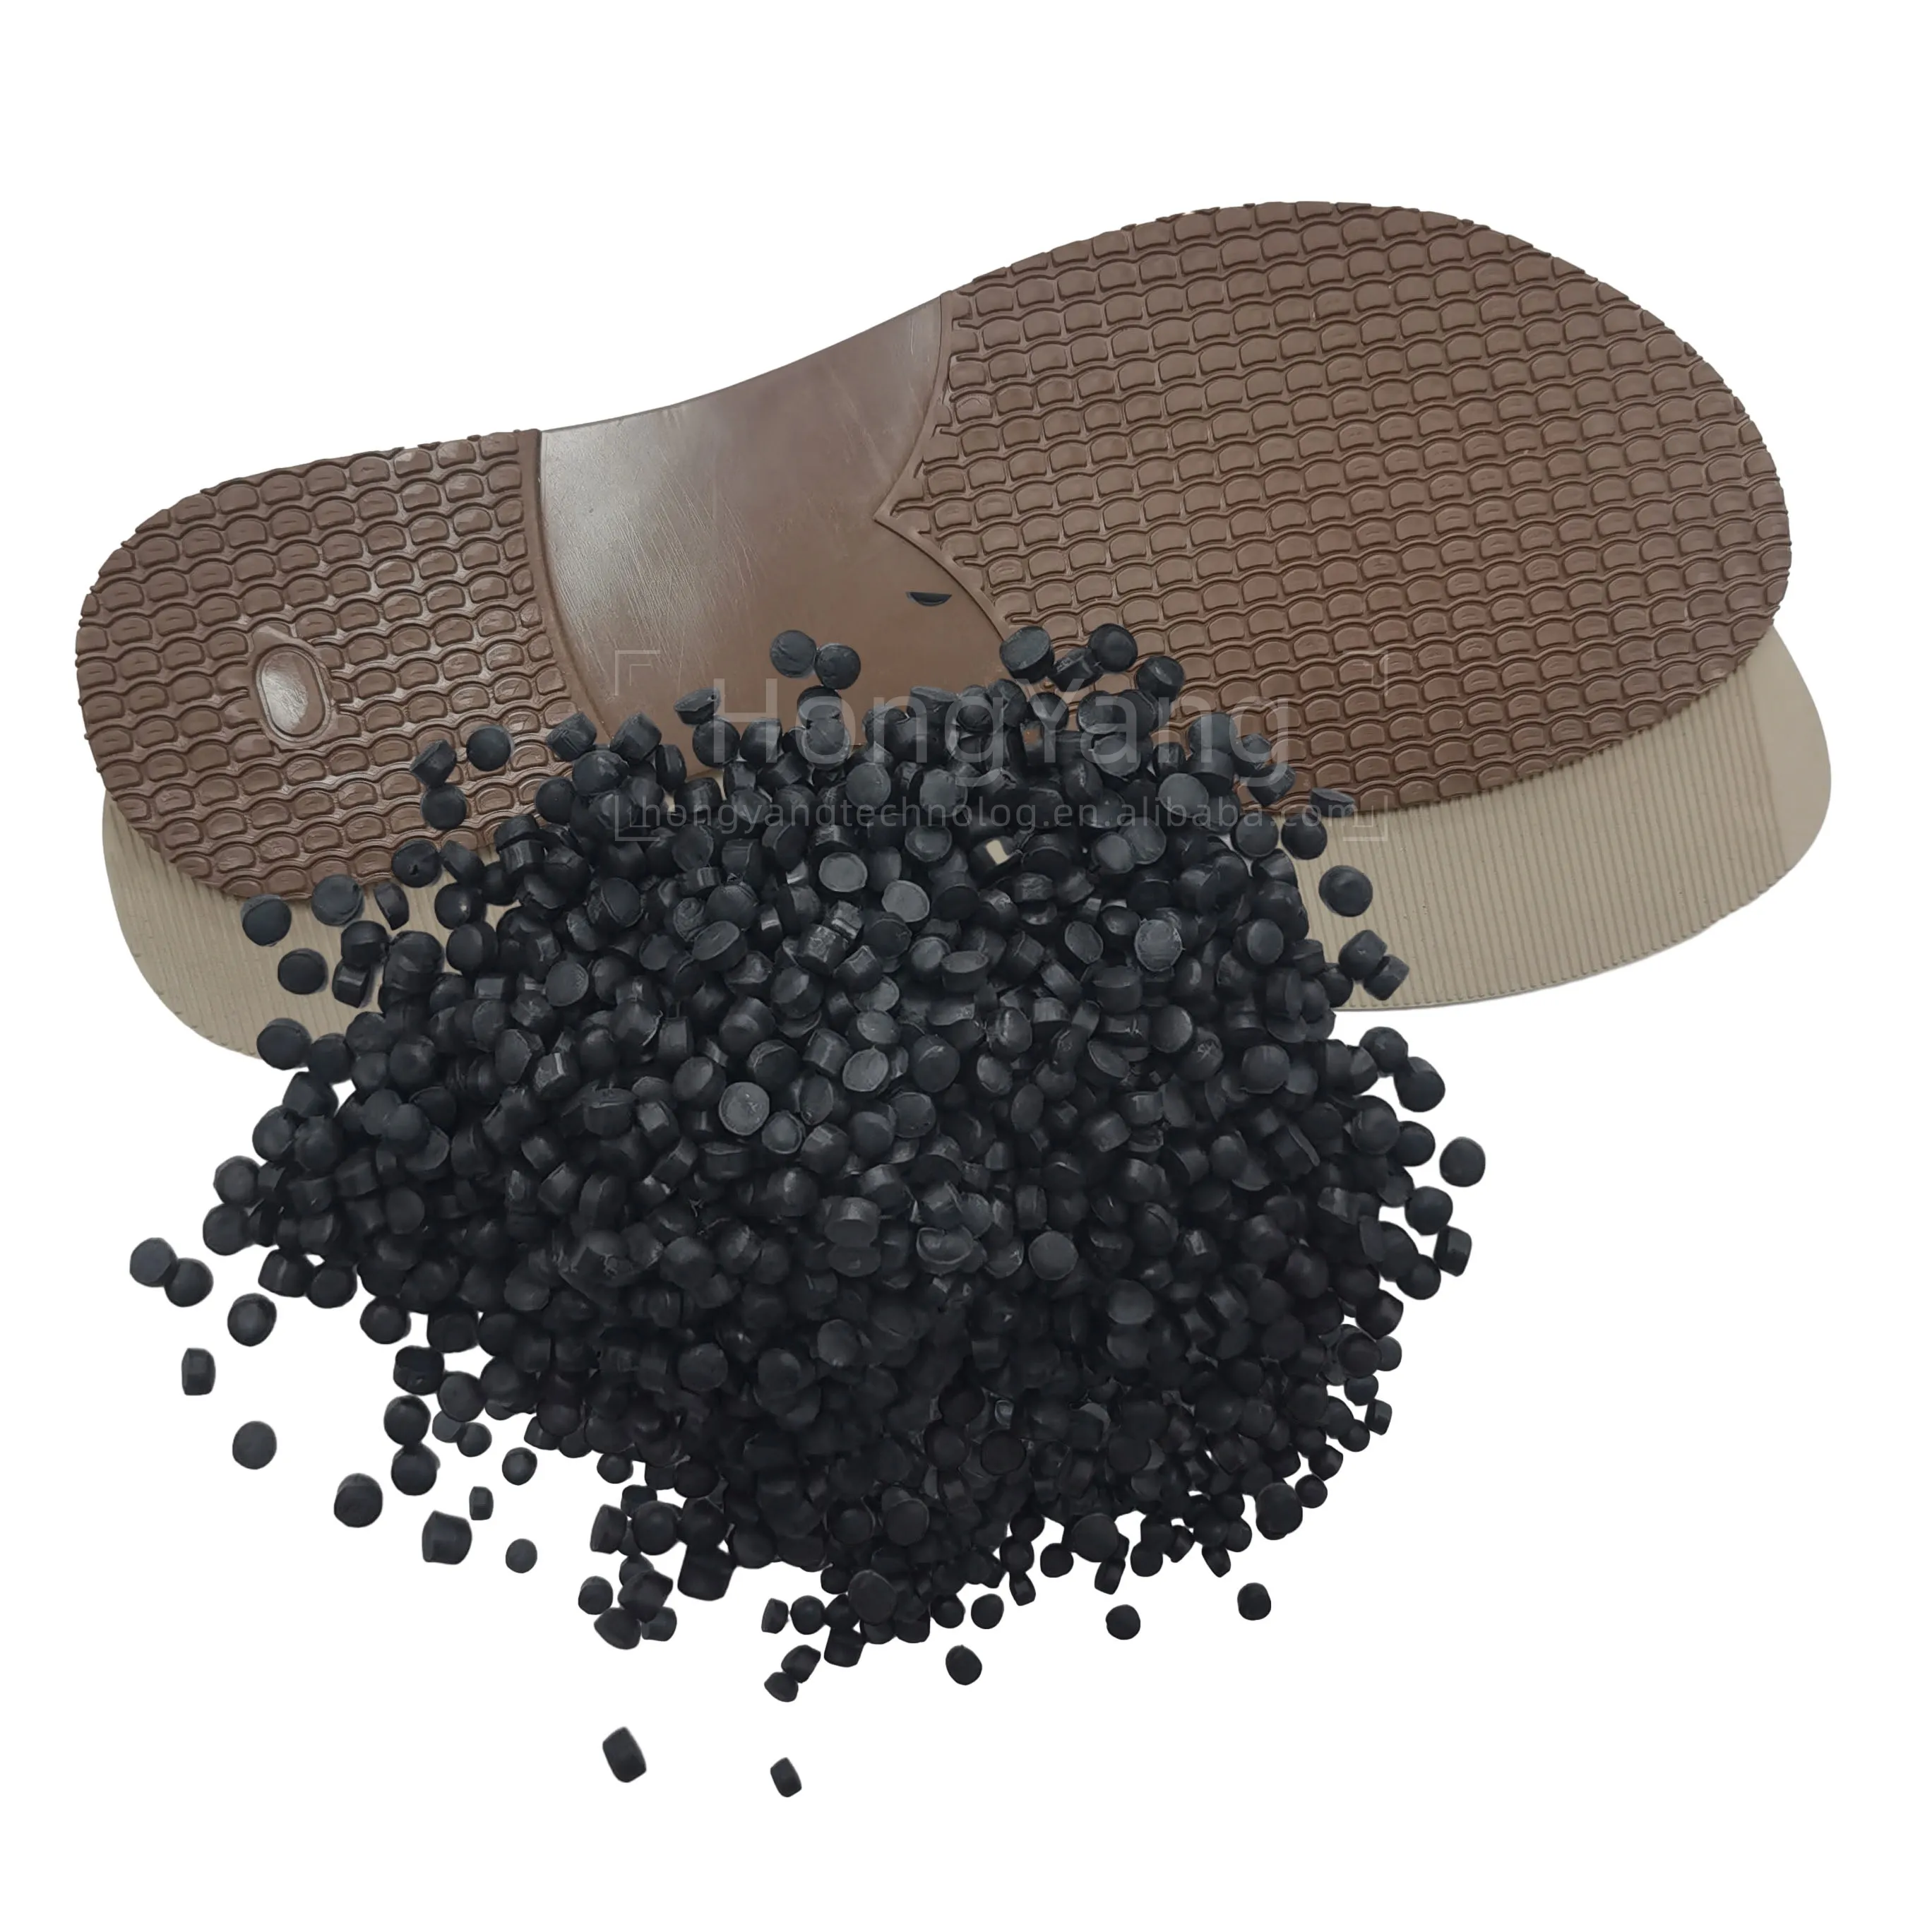 Gránulos de espuma de PVC para zapatillas deportivas, sandalia, pellets de PVC blando/PVC para material de suela de zapato/compuesto de PVC transparente